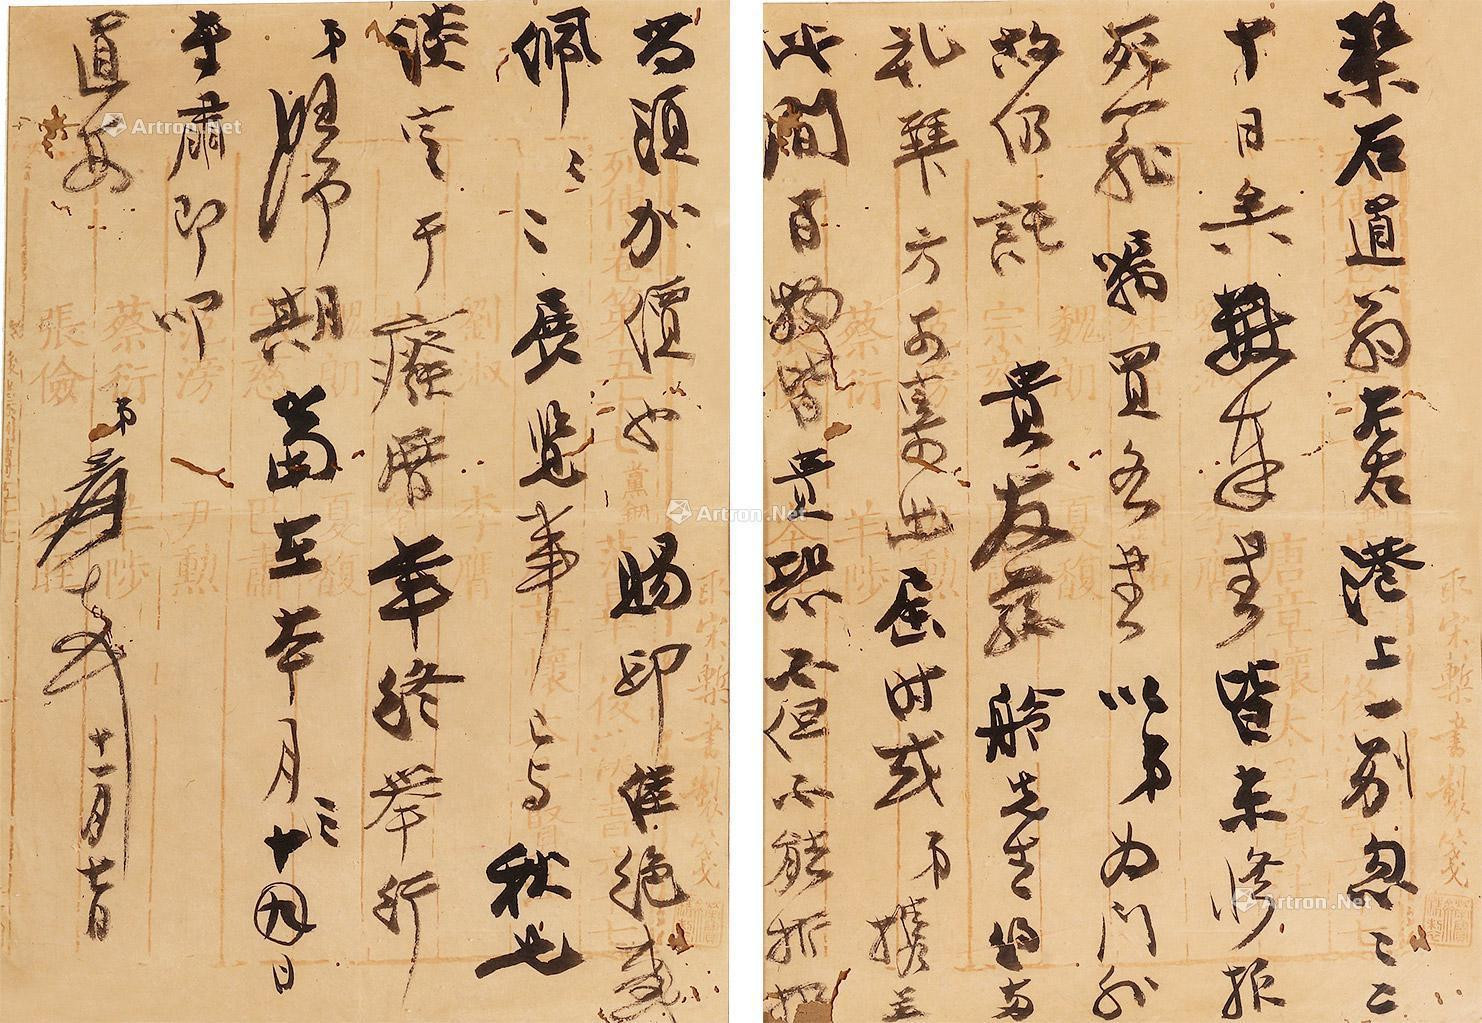 One letter of two pages by Zhang Daqian to Jian Qin Zhai